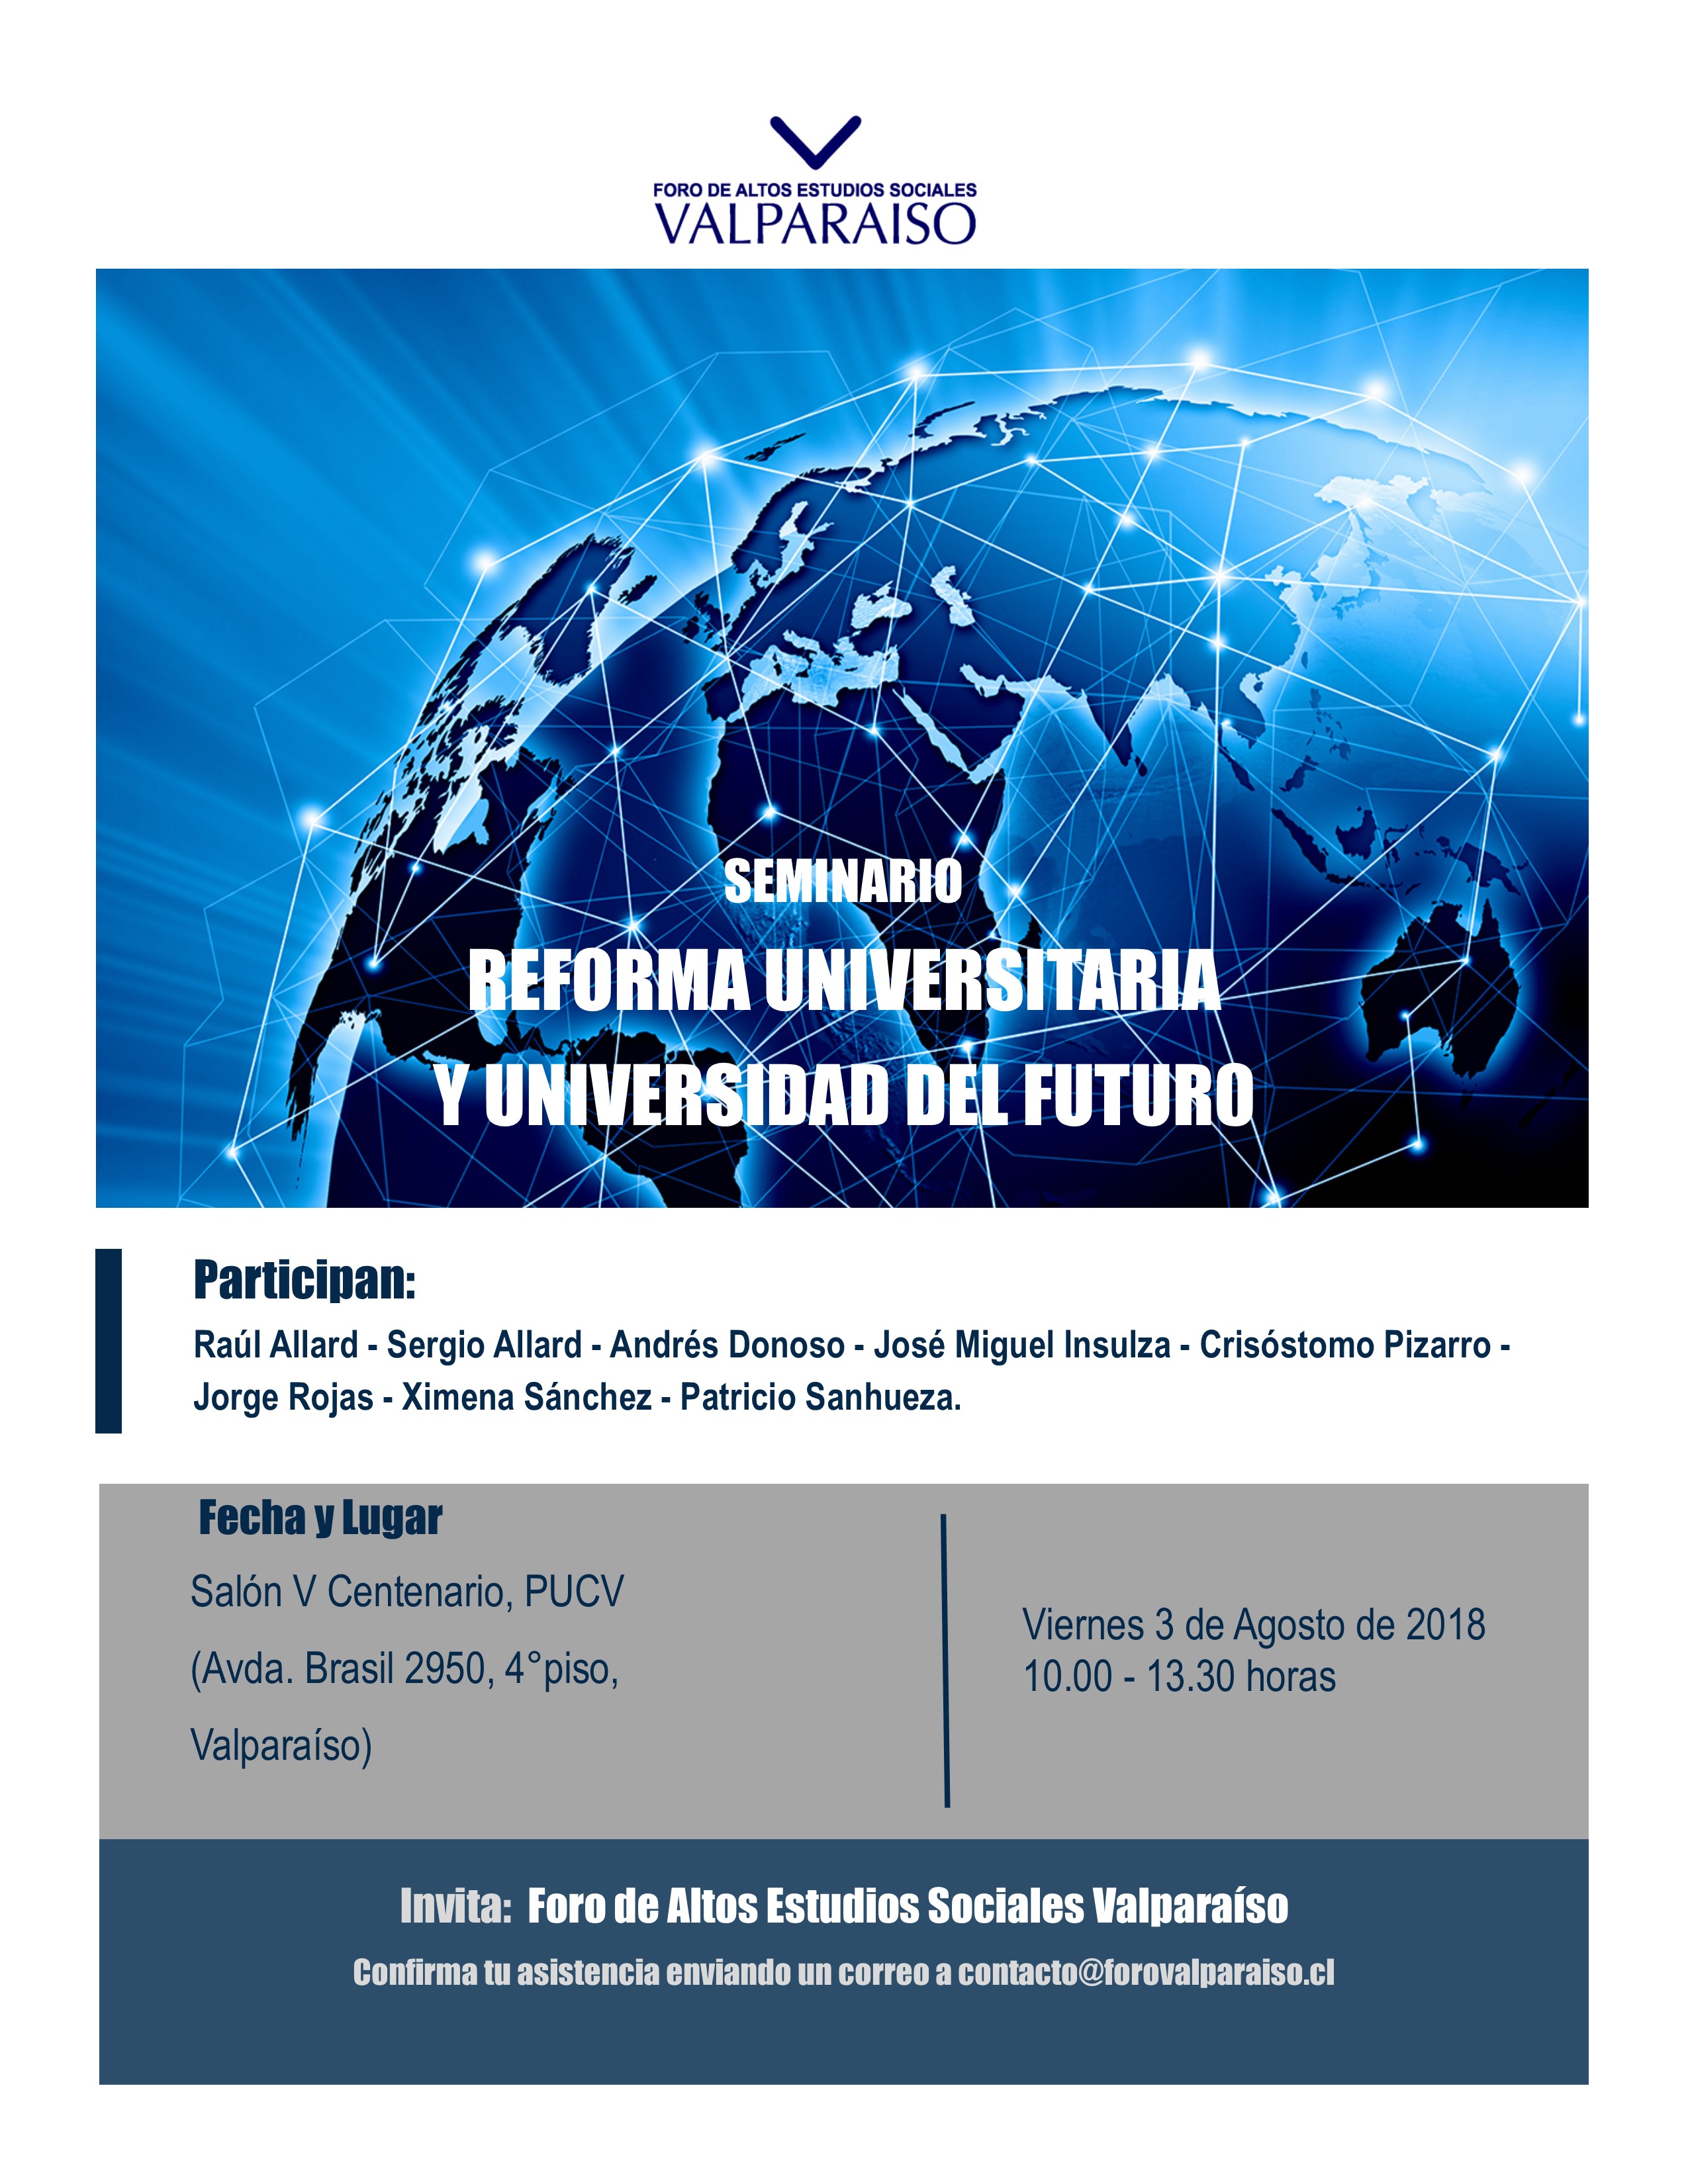 Foro Valparaíso organiza seminario "Reforma universitaria y universidad del futuro"